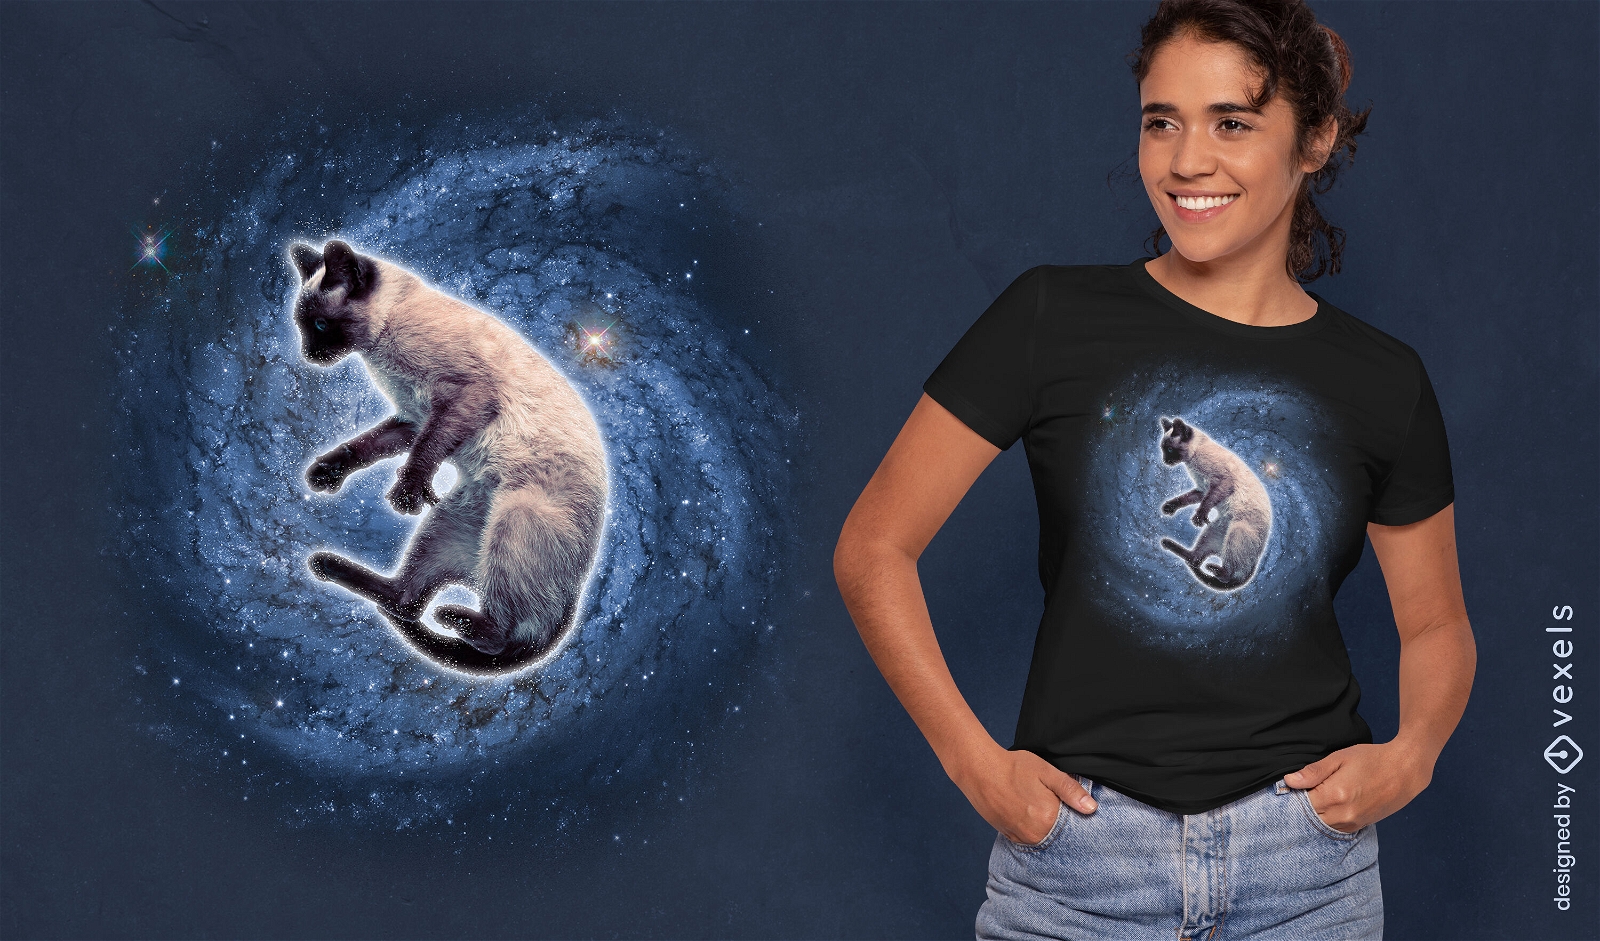 Fotografischer T-Shirt Entwurf der Galaxiekatze